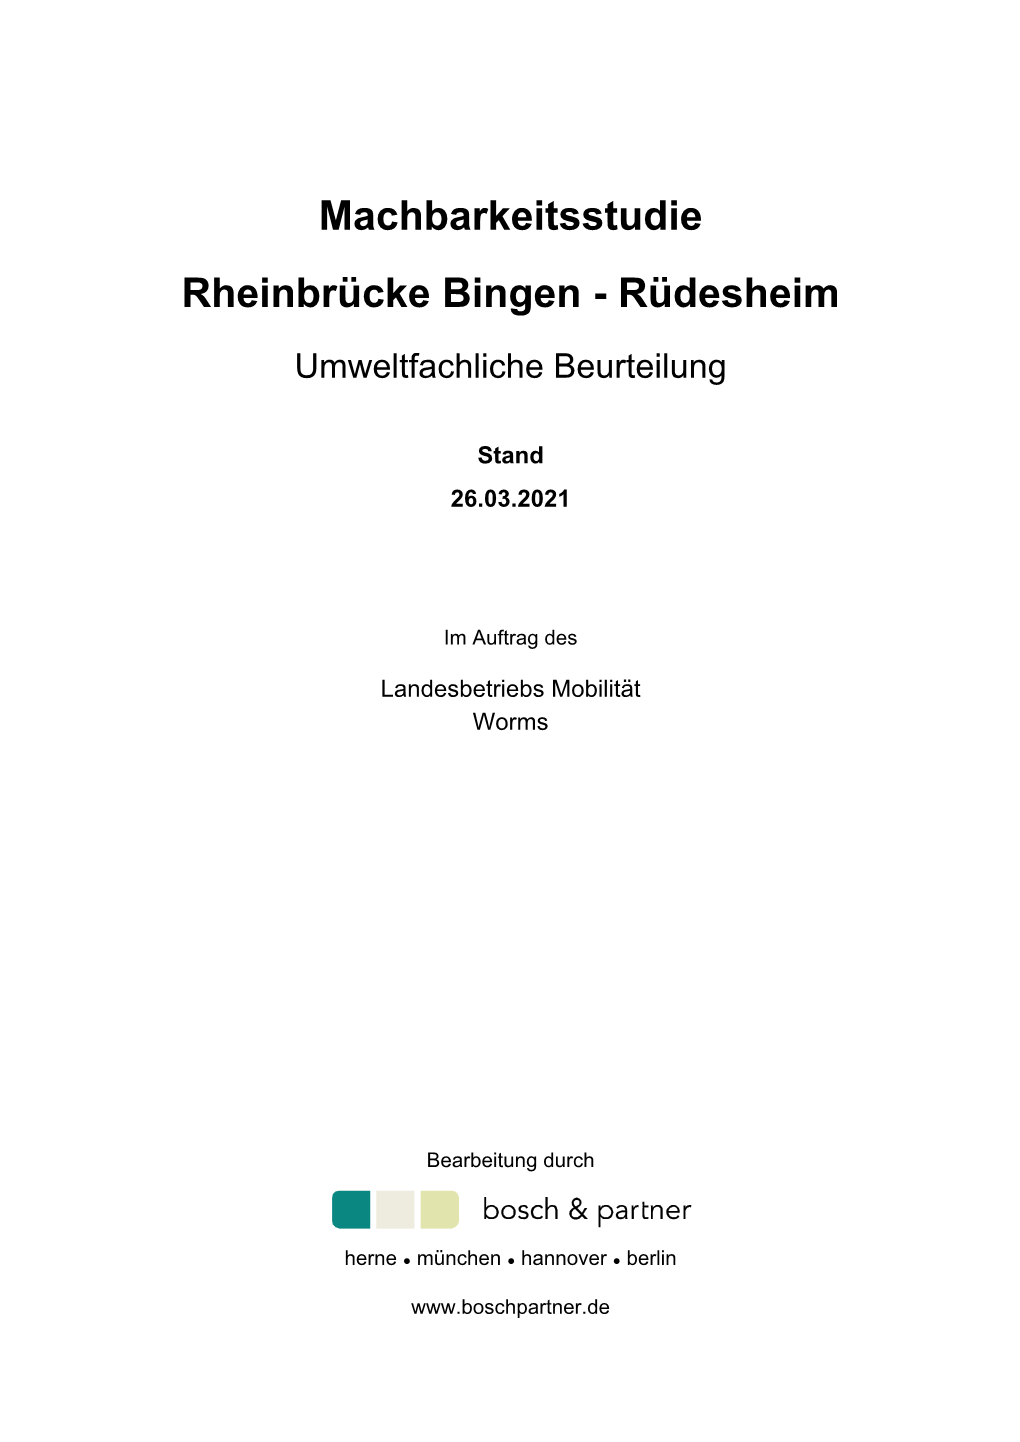 Machbarkeitsstudie Rheinbrücke Bingen - Rüdesheim Umweltfachliche Beurteilung